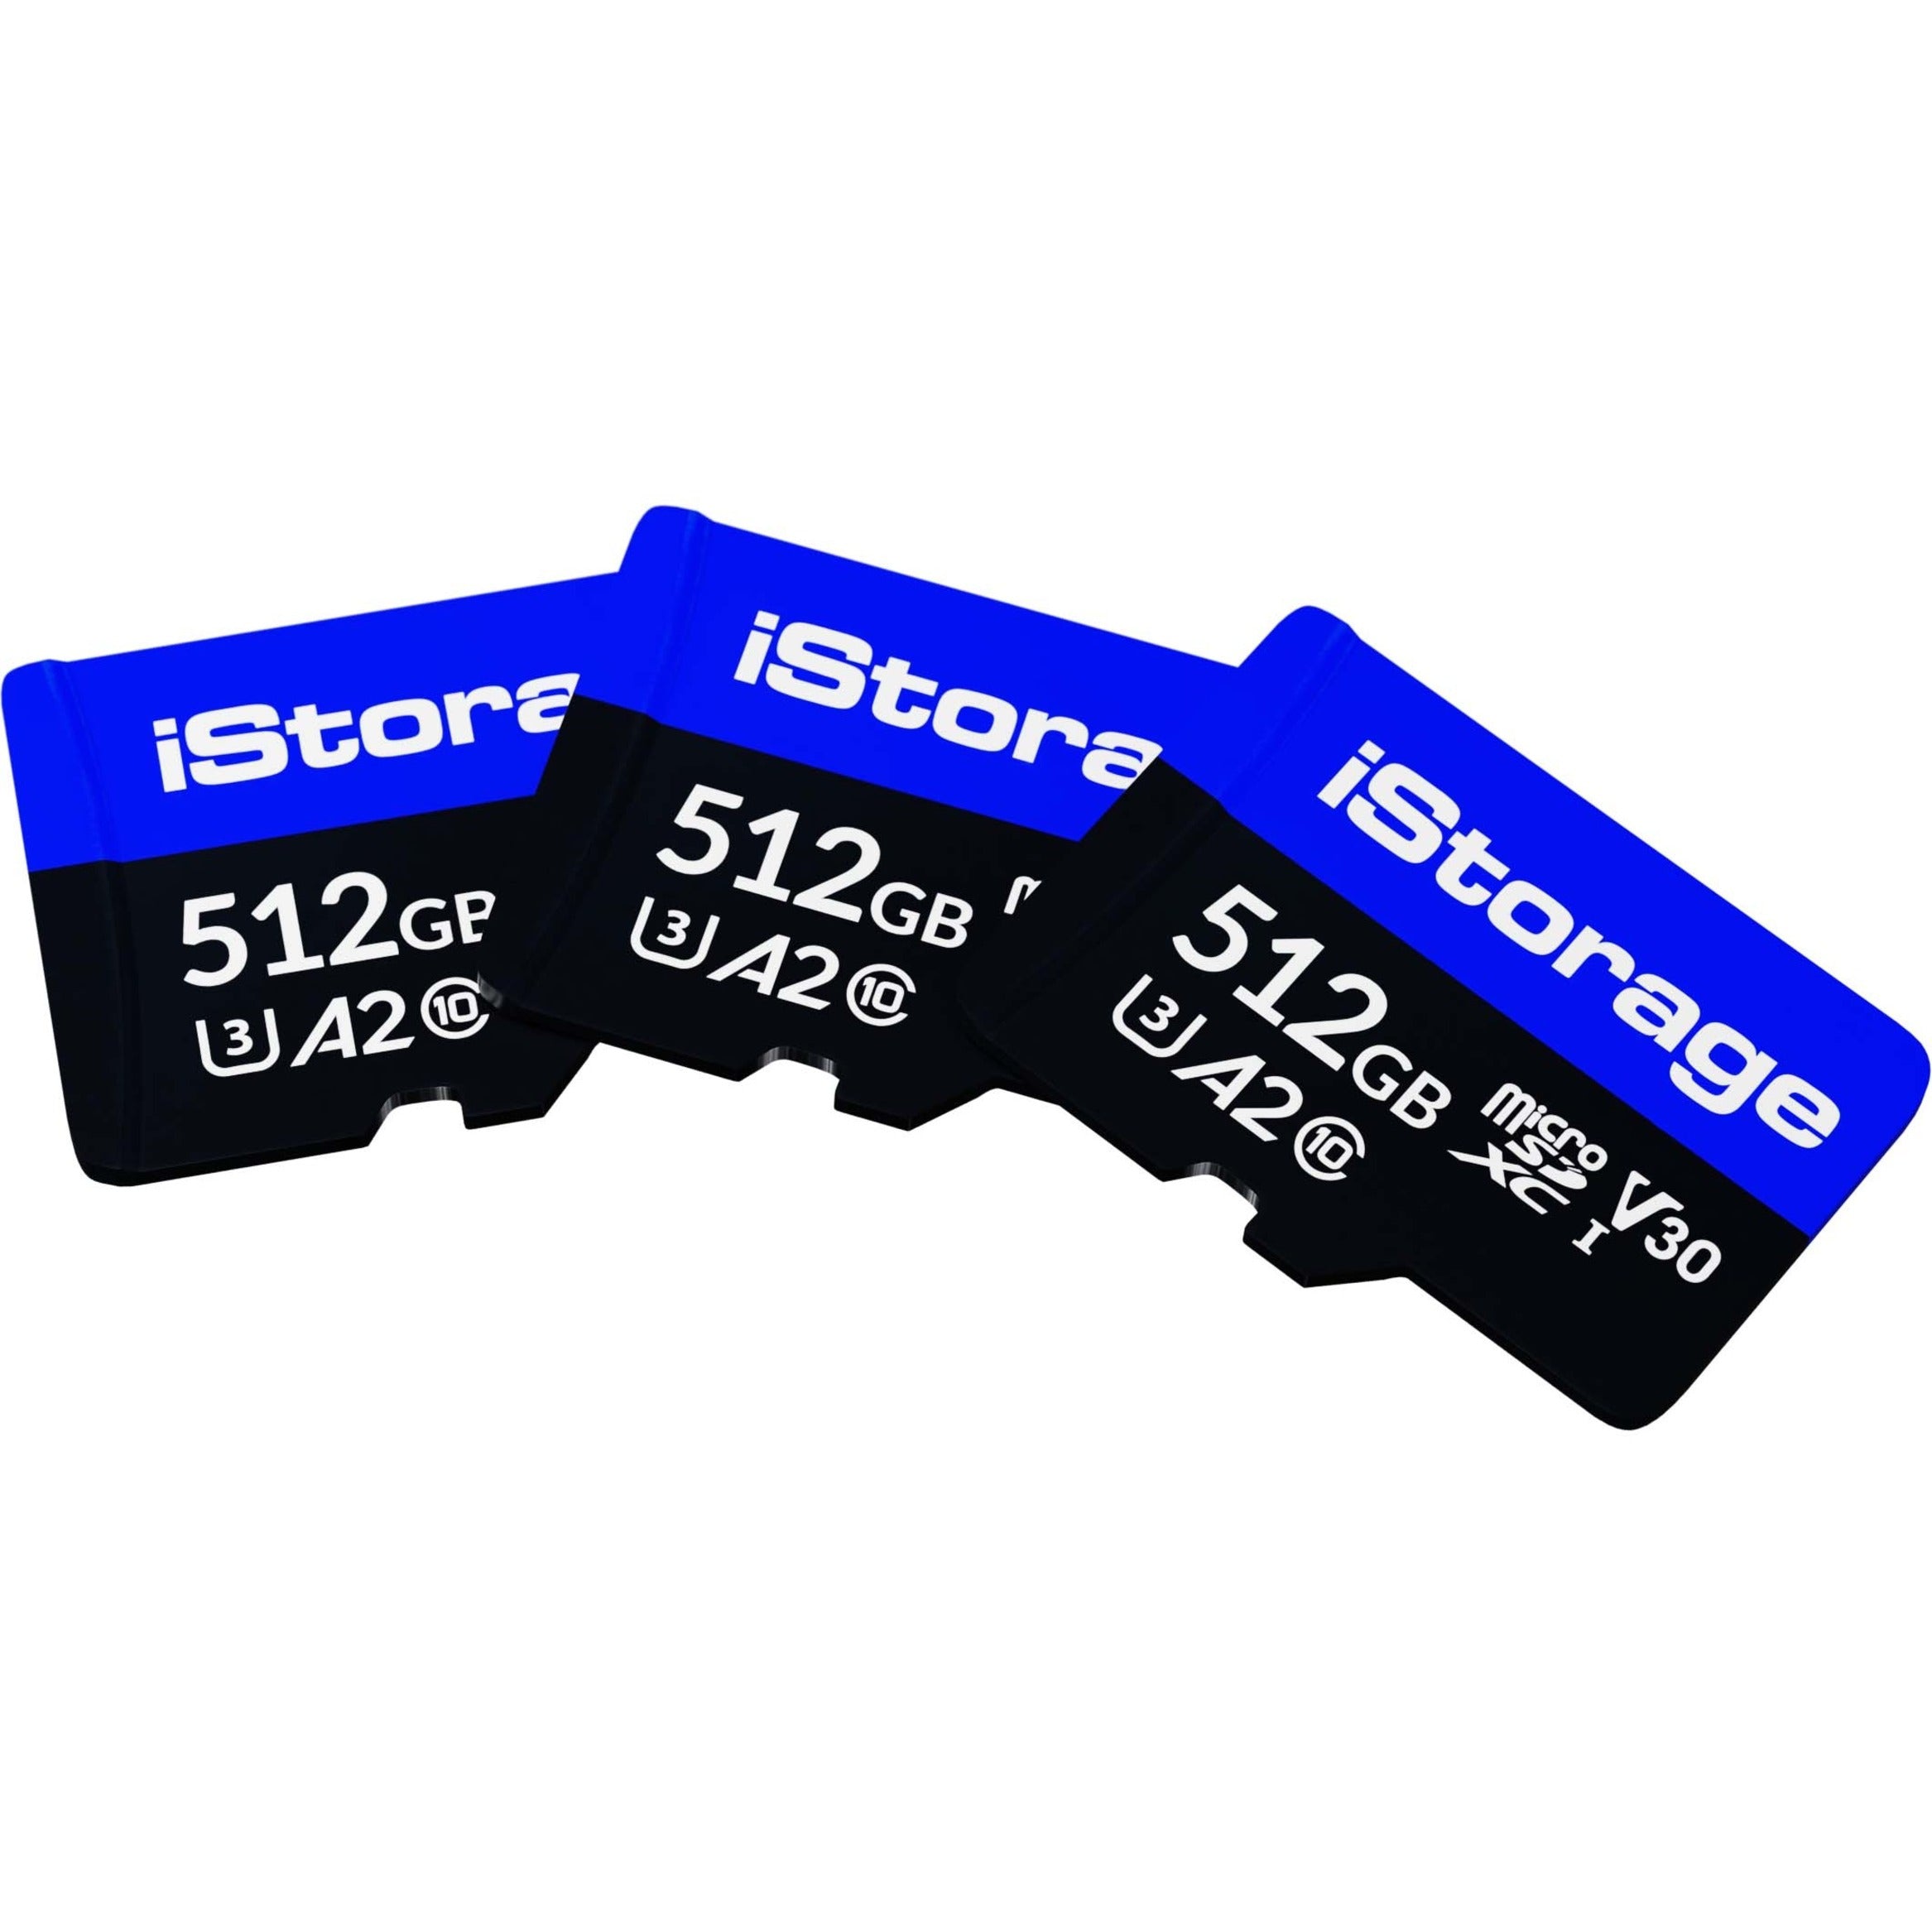 iStorage IS-MSD-3-512 512GB MicroSDXC Card, 3-Pack, Maximum Read Speed 100 MB/s, Maximum Write Speed 95 MB/s